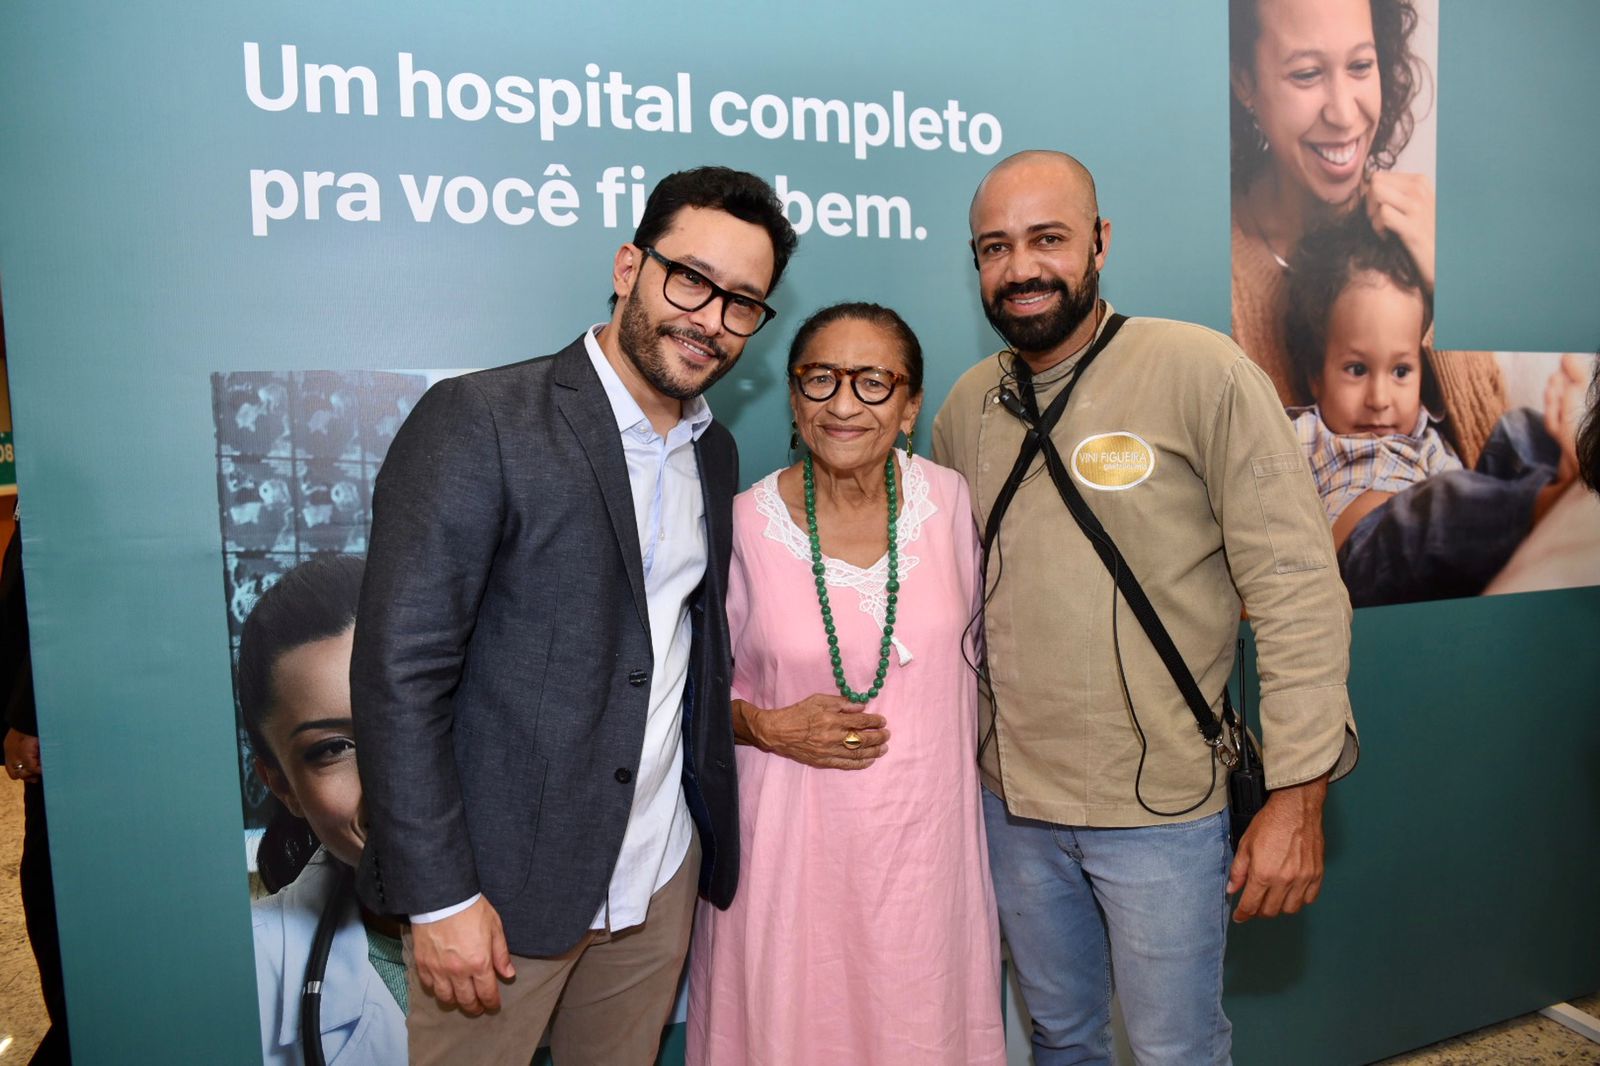 Danilo Brito, Licia Fabio e Vini Figueira                        